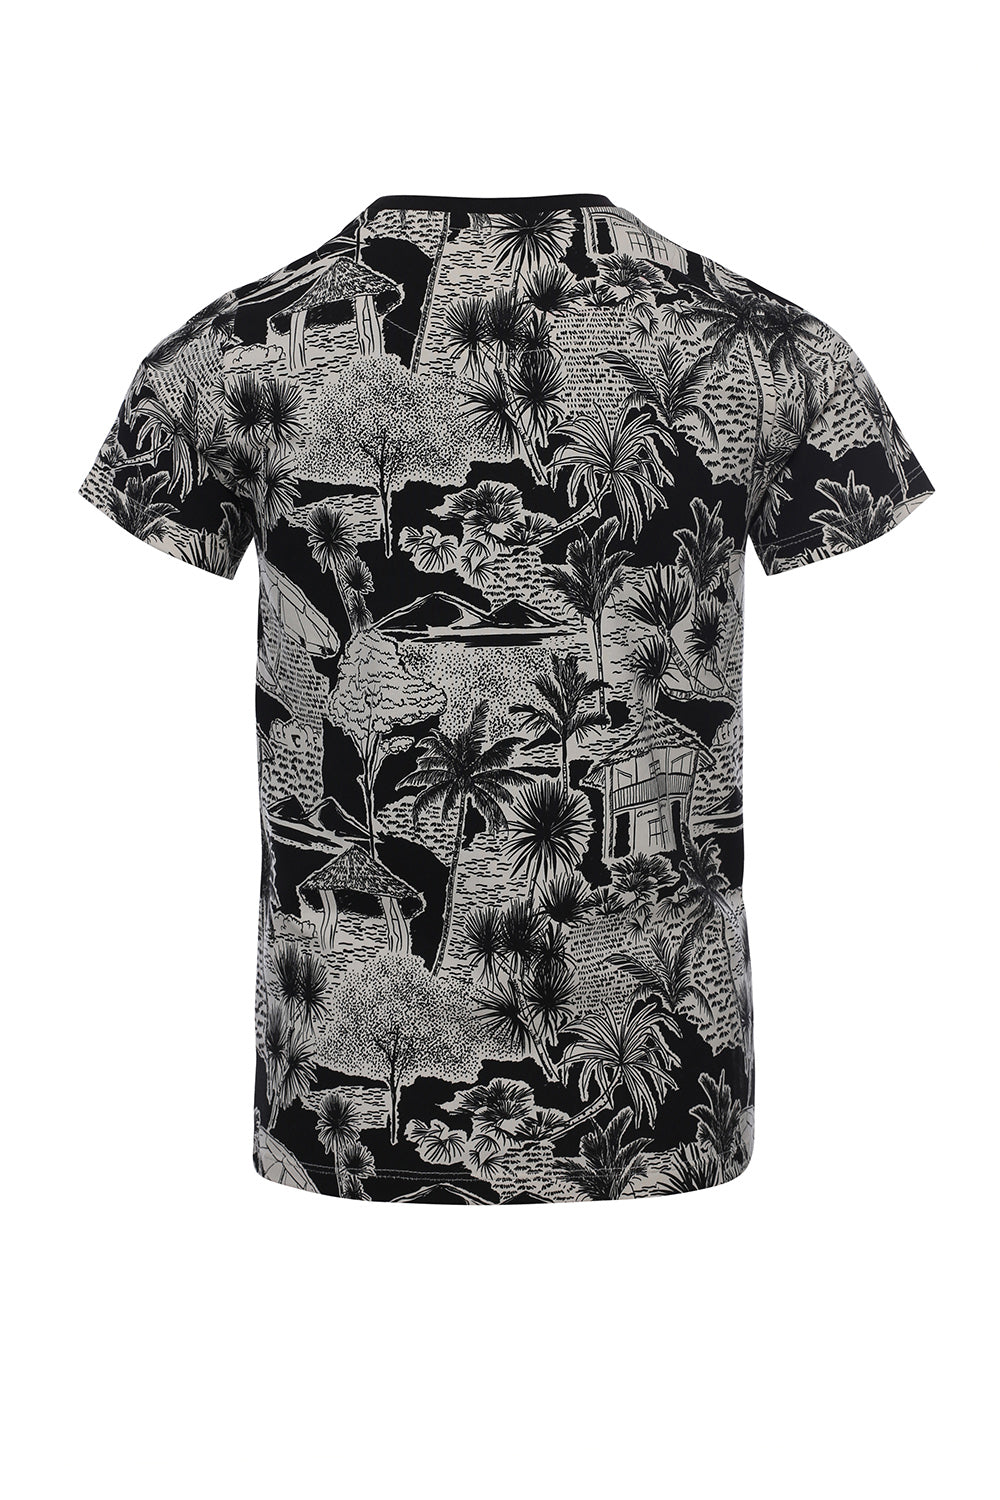 Jongens T-Shirt van Common Heroes in de kleur Jungle AO in maat 158-164.